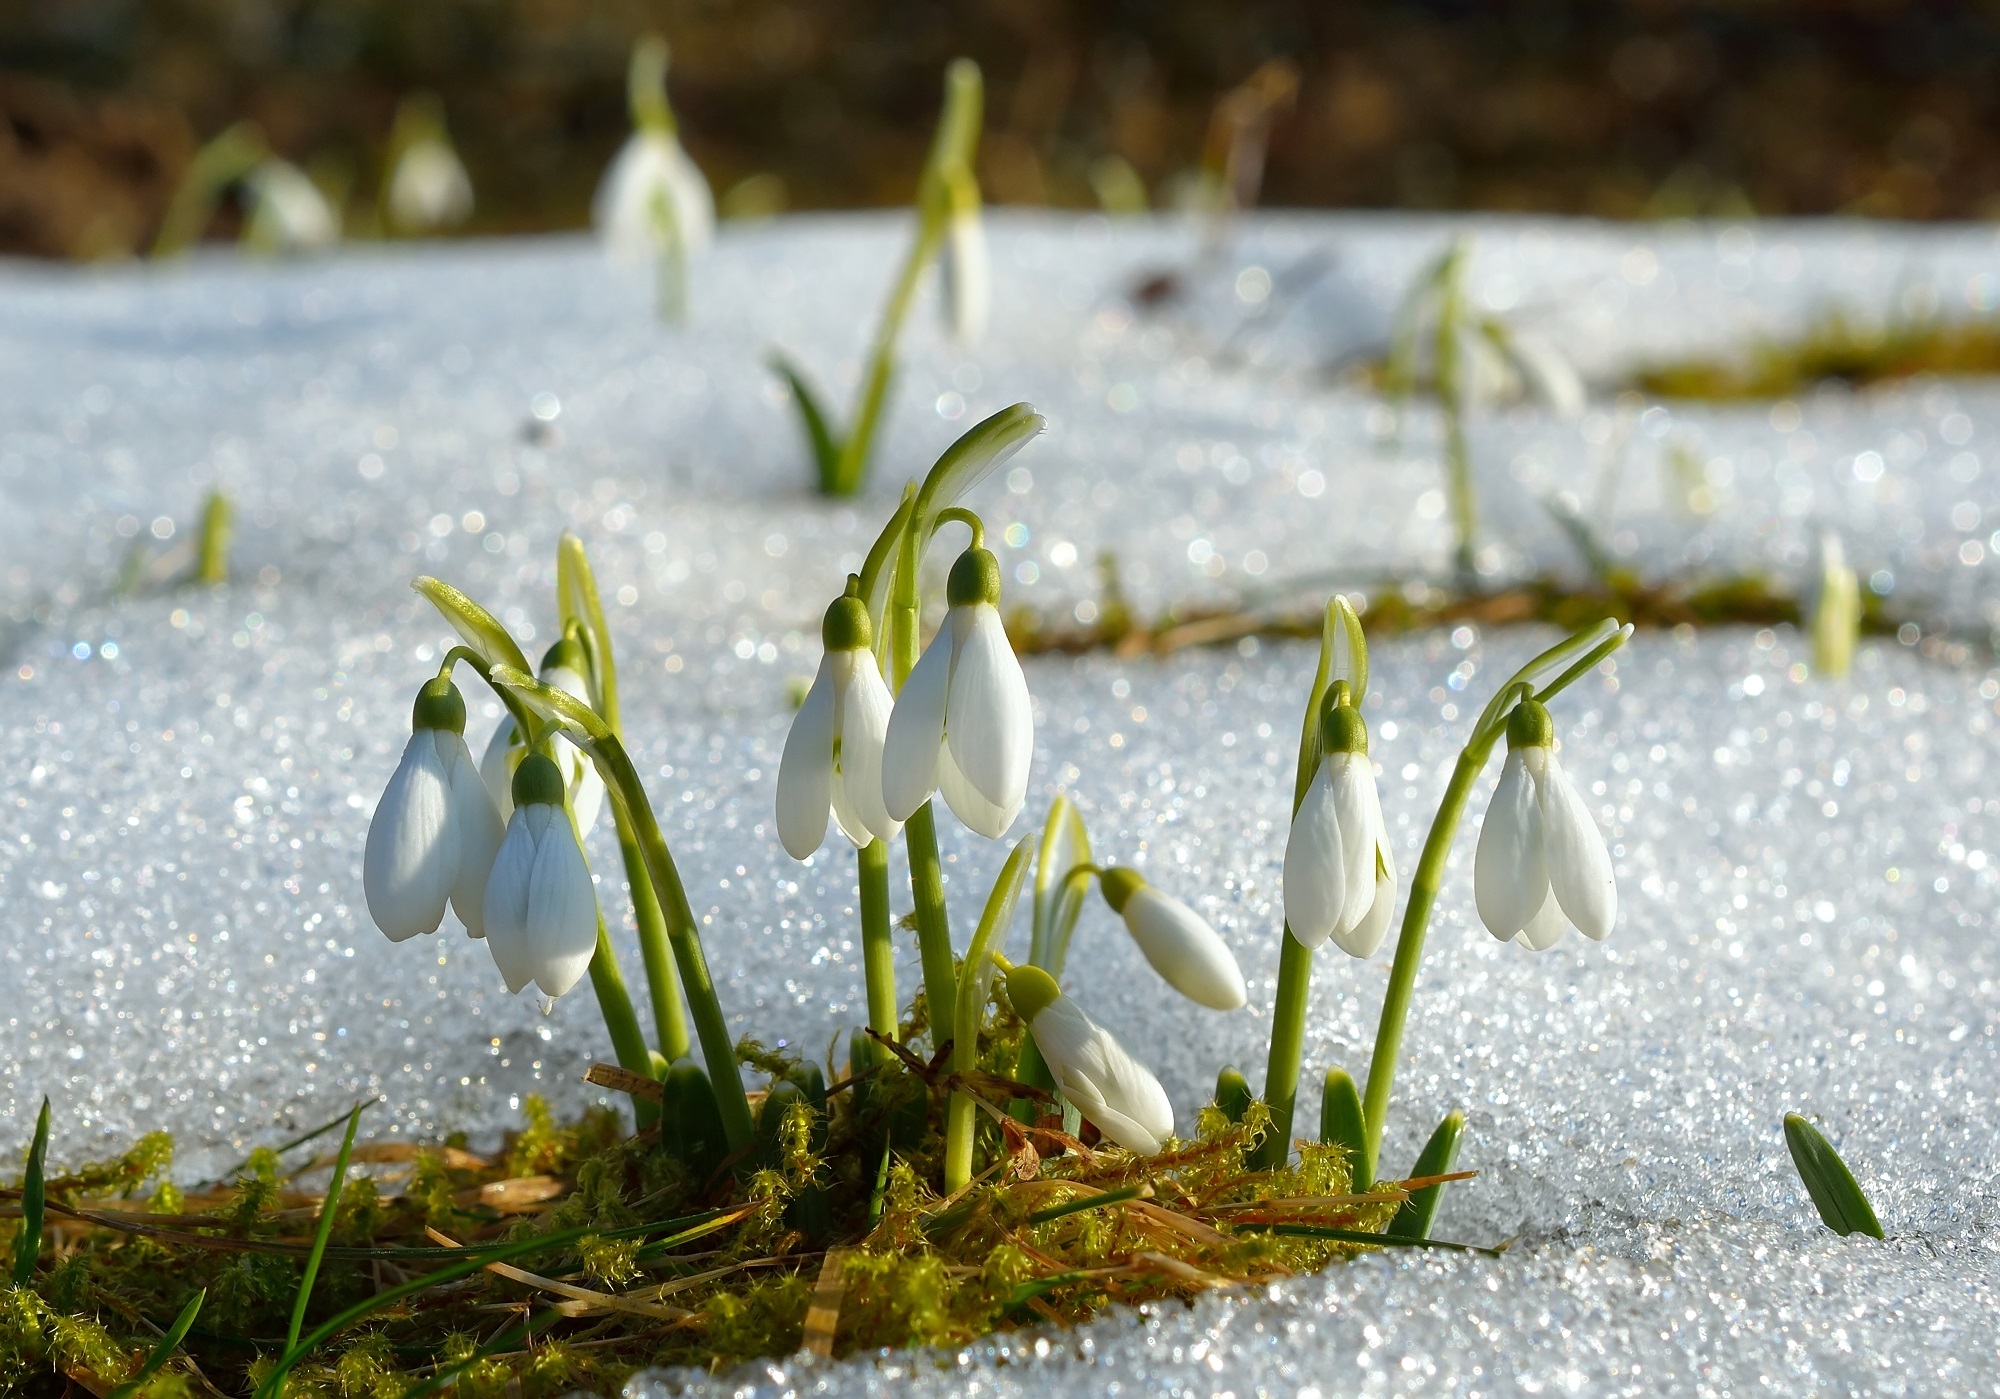 Календарь садовода и огородника март. Источник фото: Shutterstock